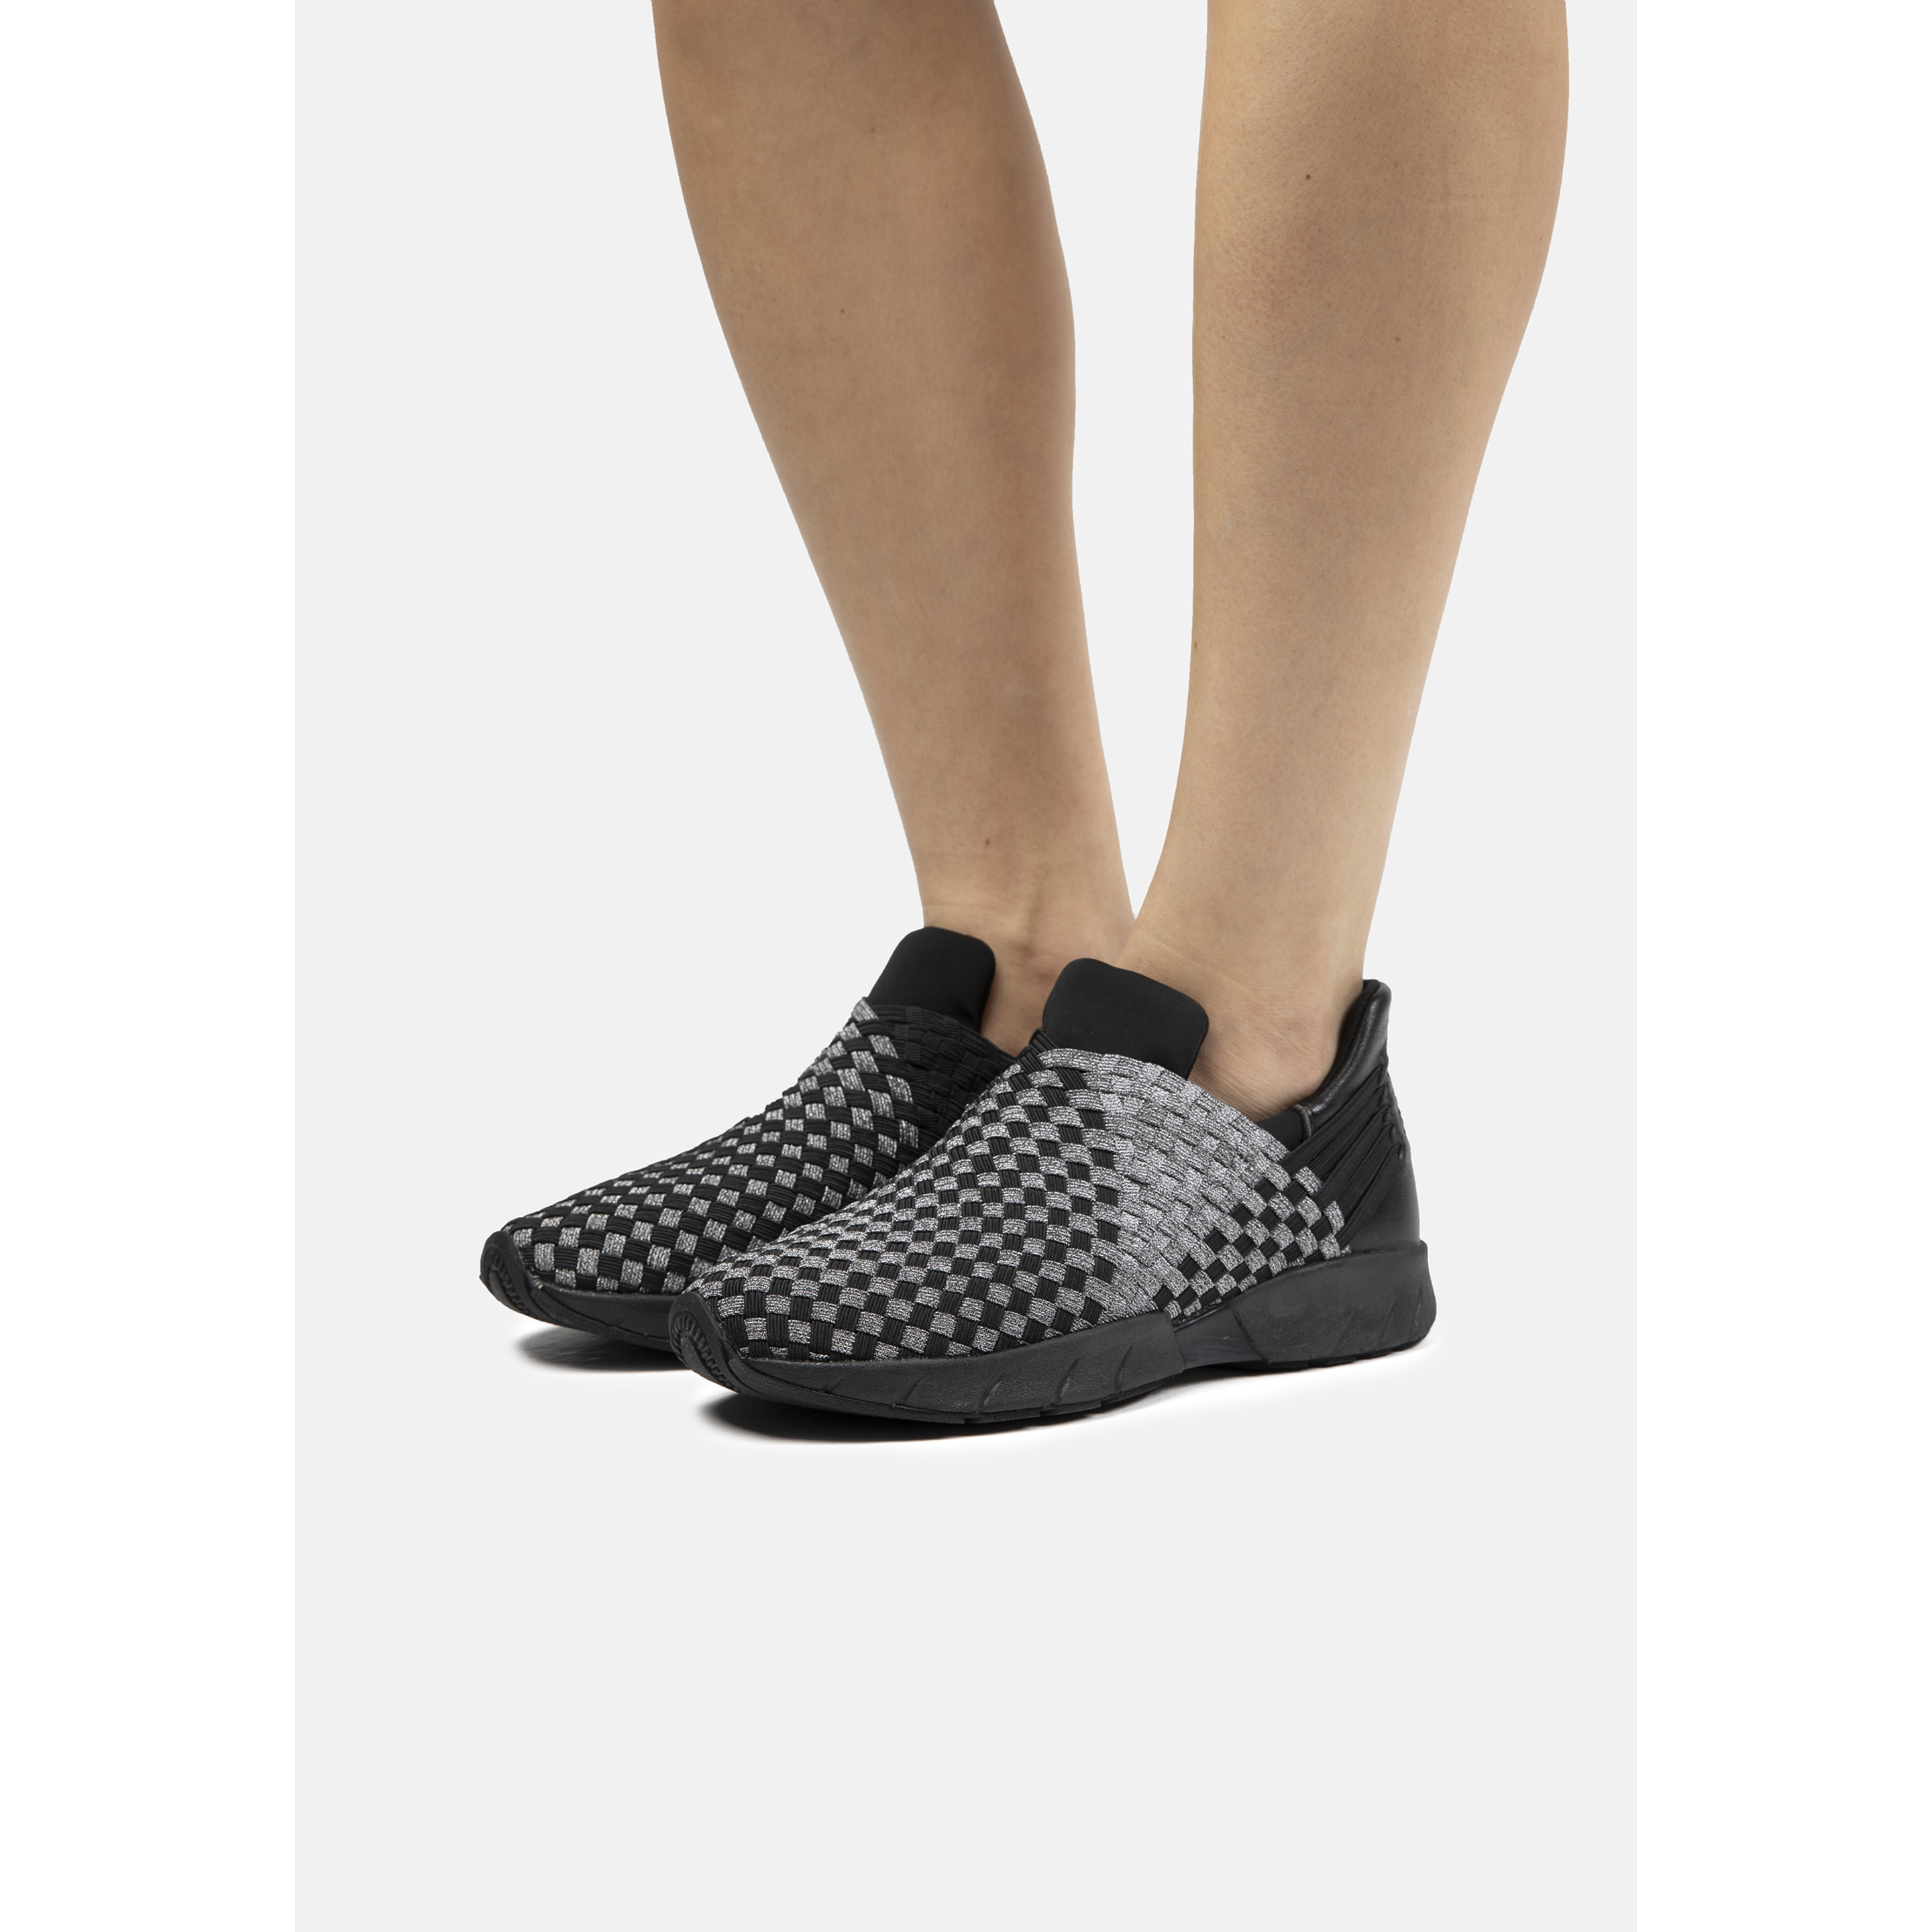 Zapatillas Deportivas De Mujer Bernie Mev De Textil En Negro (talla 35 A 42)